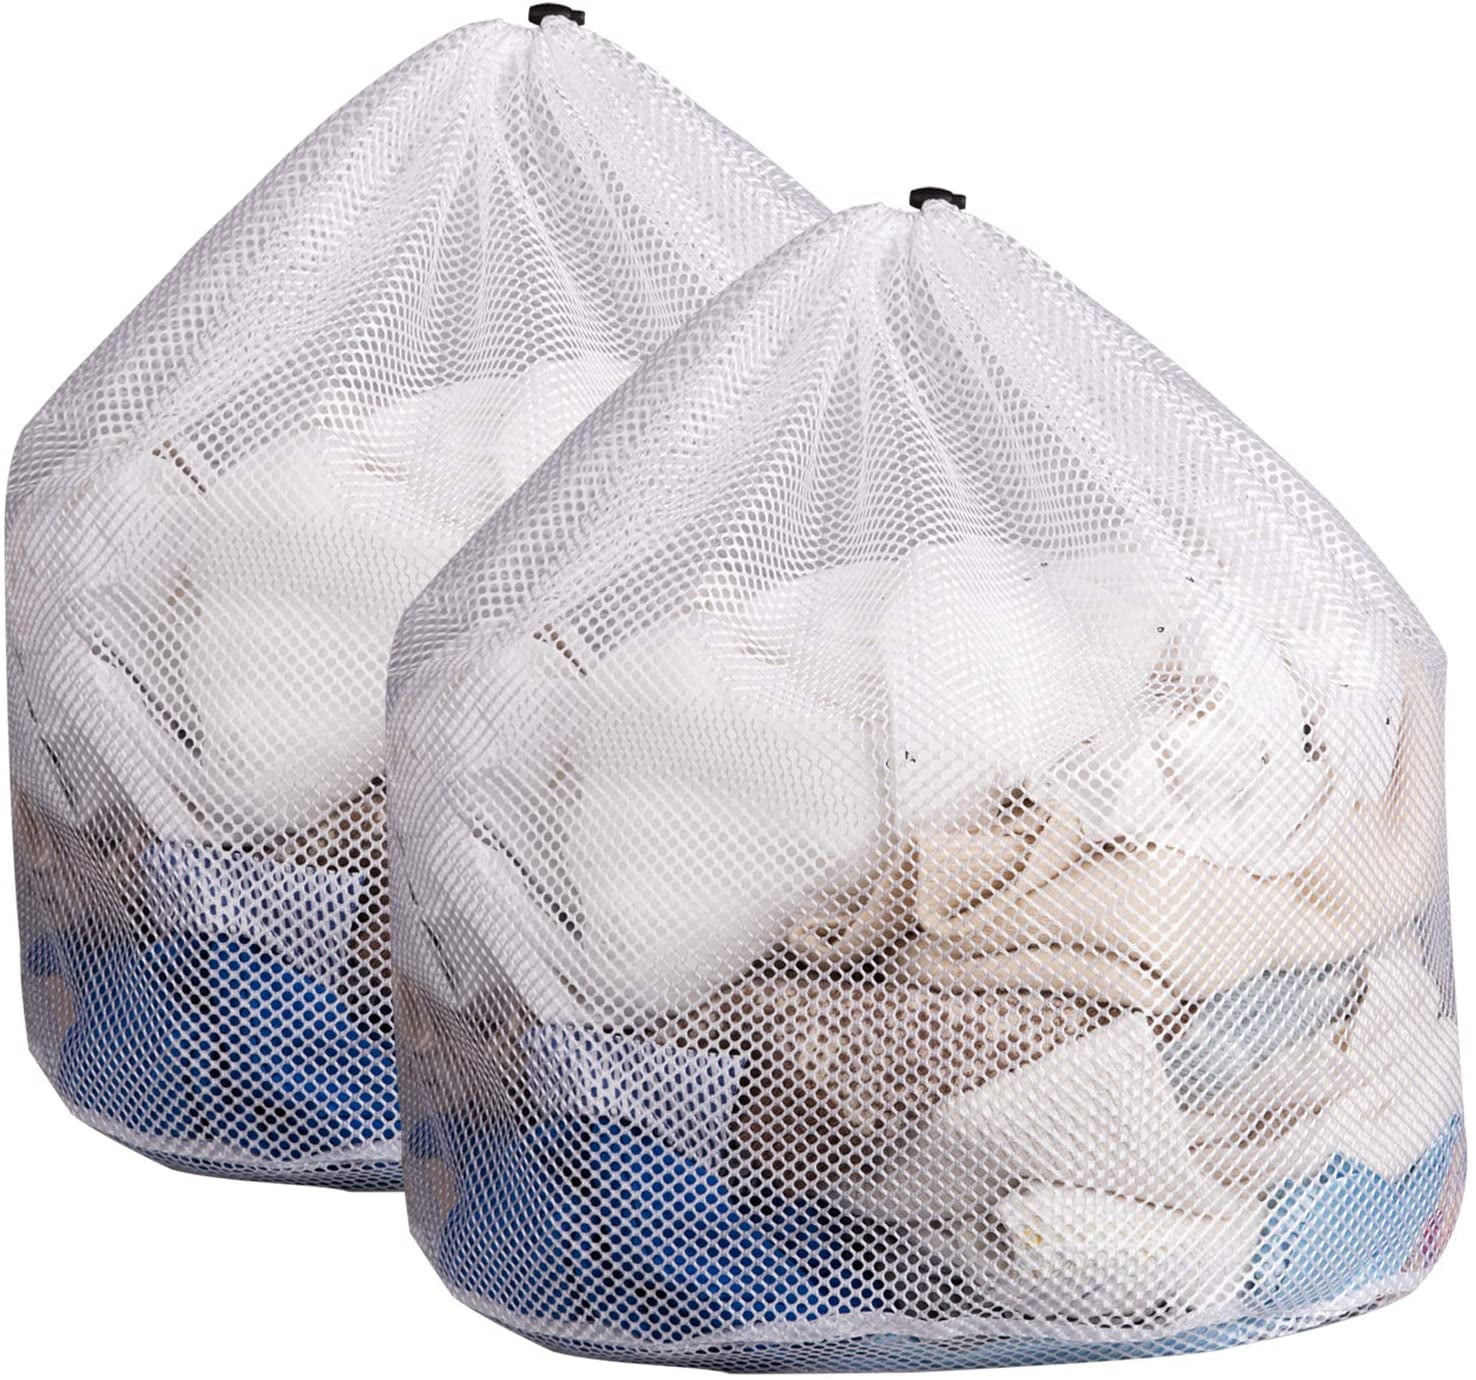 Details about   Heavy Duty Natural Cotton Canvas Laundry Sack Toy Storage Bag S,M,L,XL 